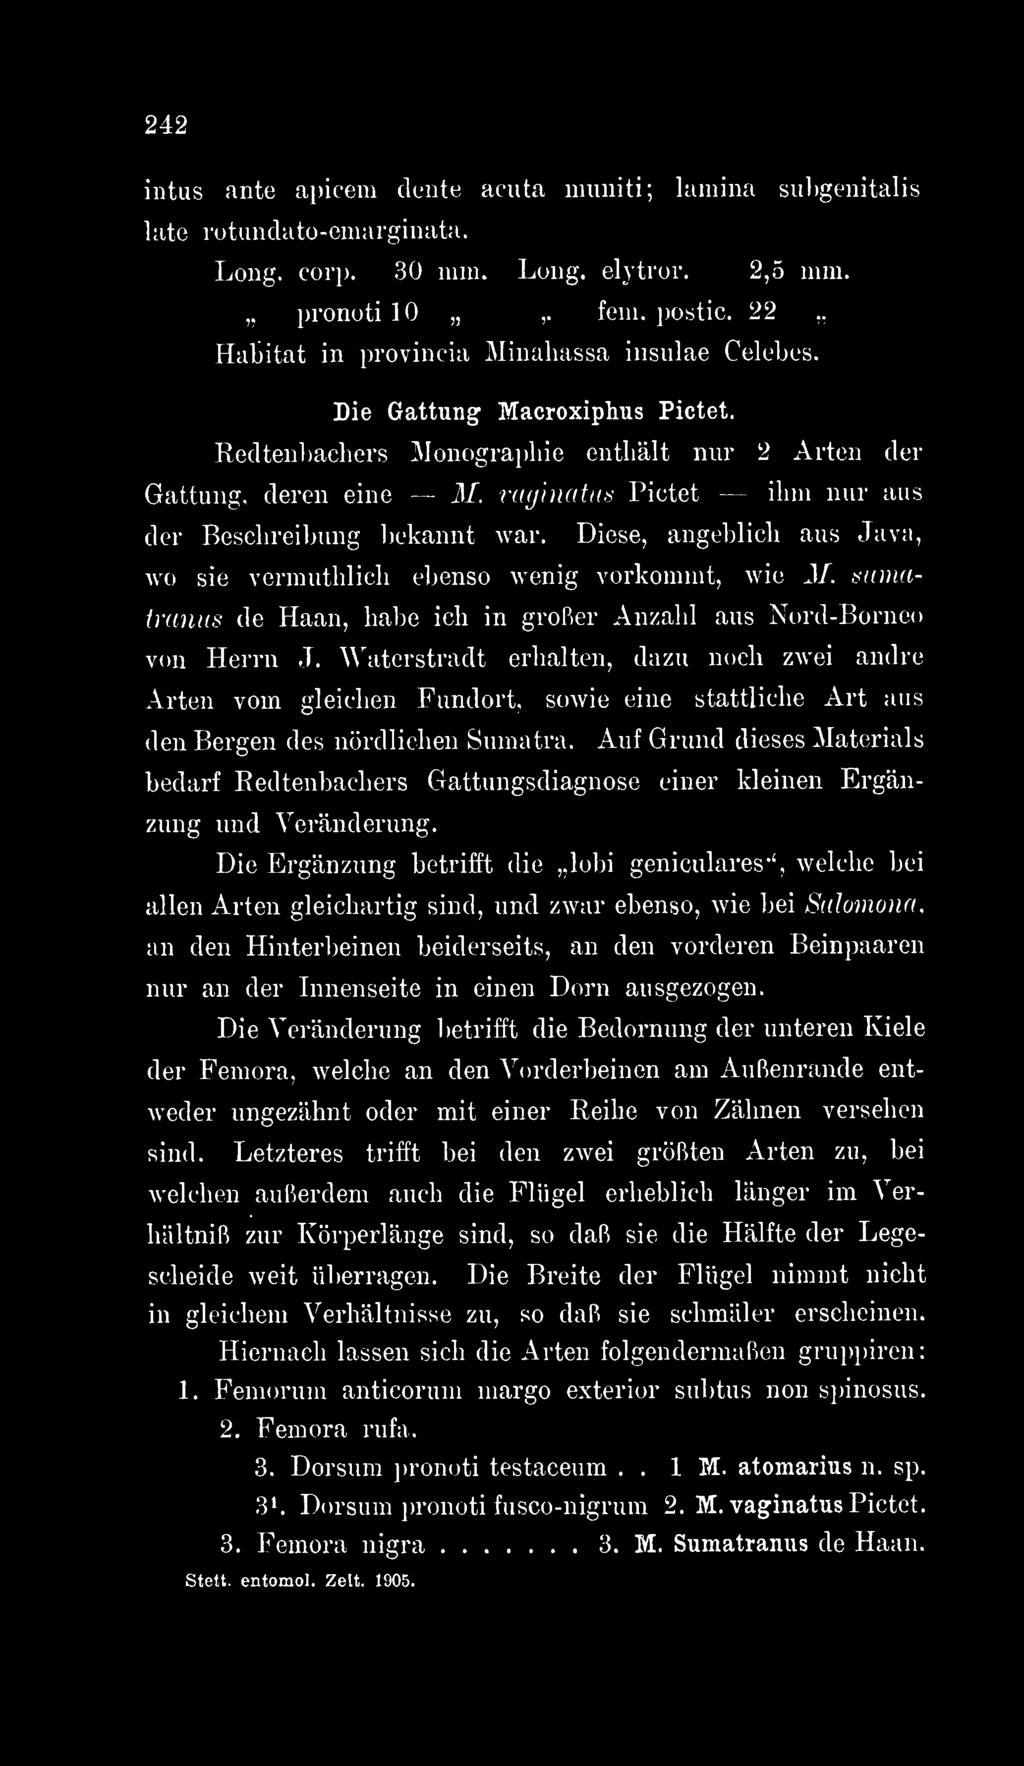 Recltenbachers Monographie enthält nur 2 Arten der Gattung, deren eine M. raginatus Pictet ihui nur aus der Beschreibung l)ekannt war.